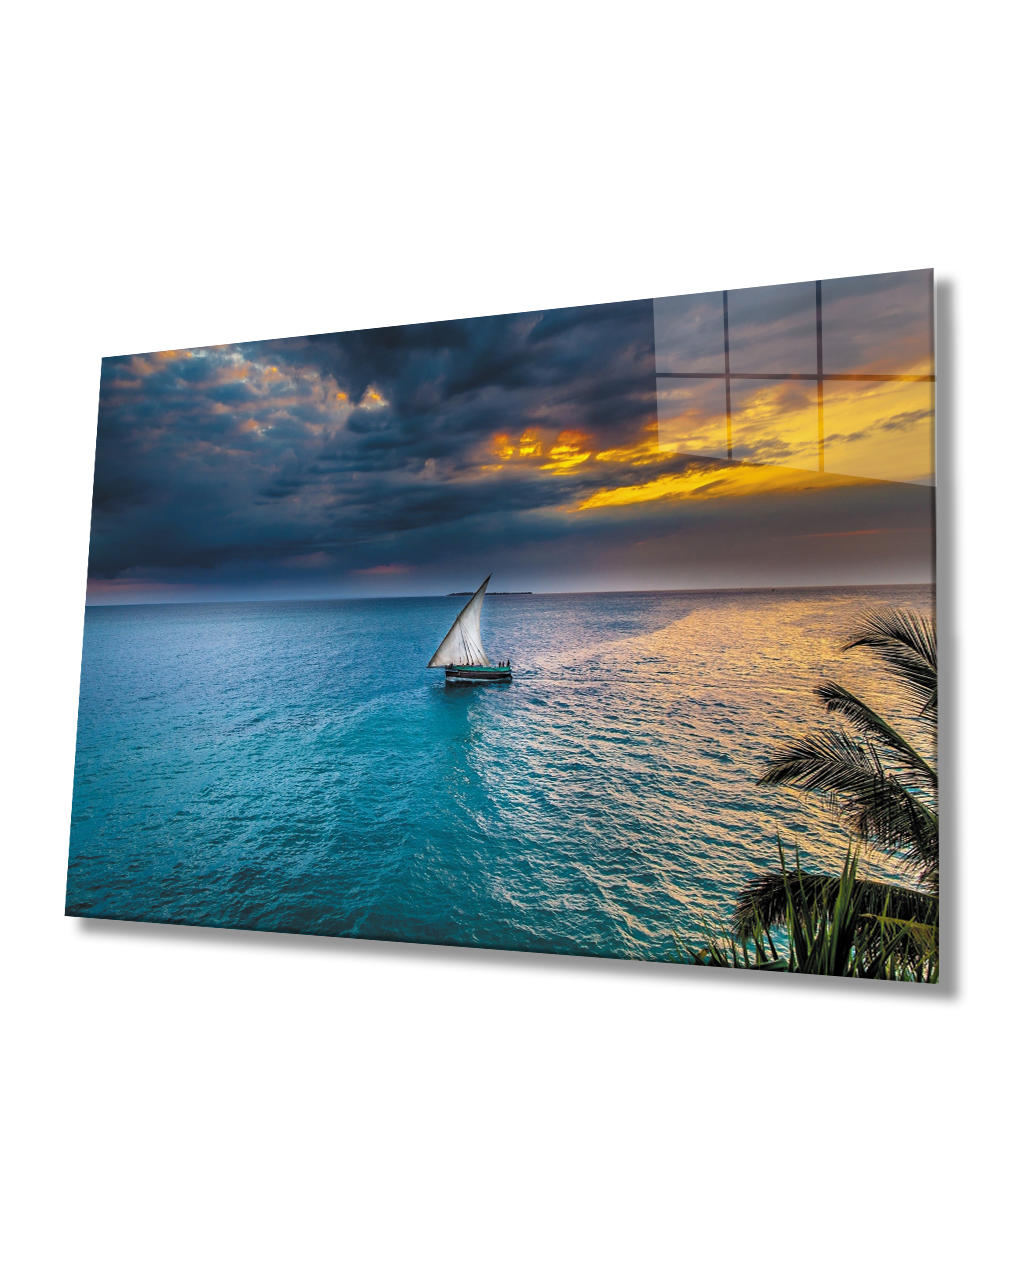 Gün Batımı Yelkenli Cam Tablo  4mm Dayanıklı Temperli Cam Sunset Sail Glass Table 4mm Durable Tempered Glass